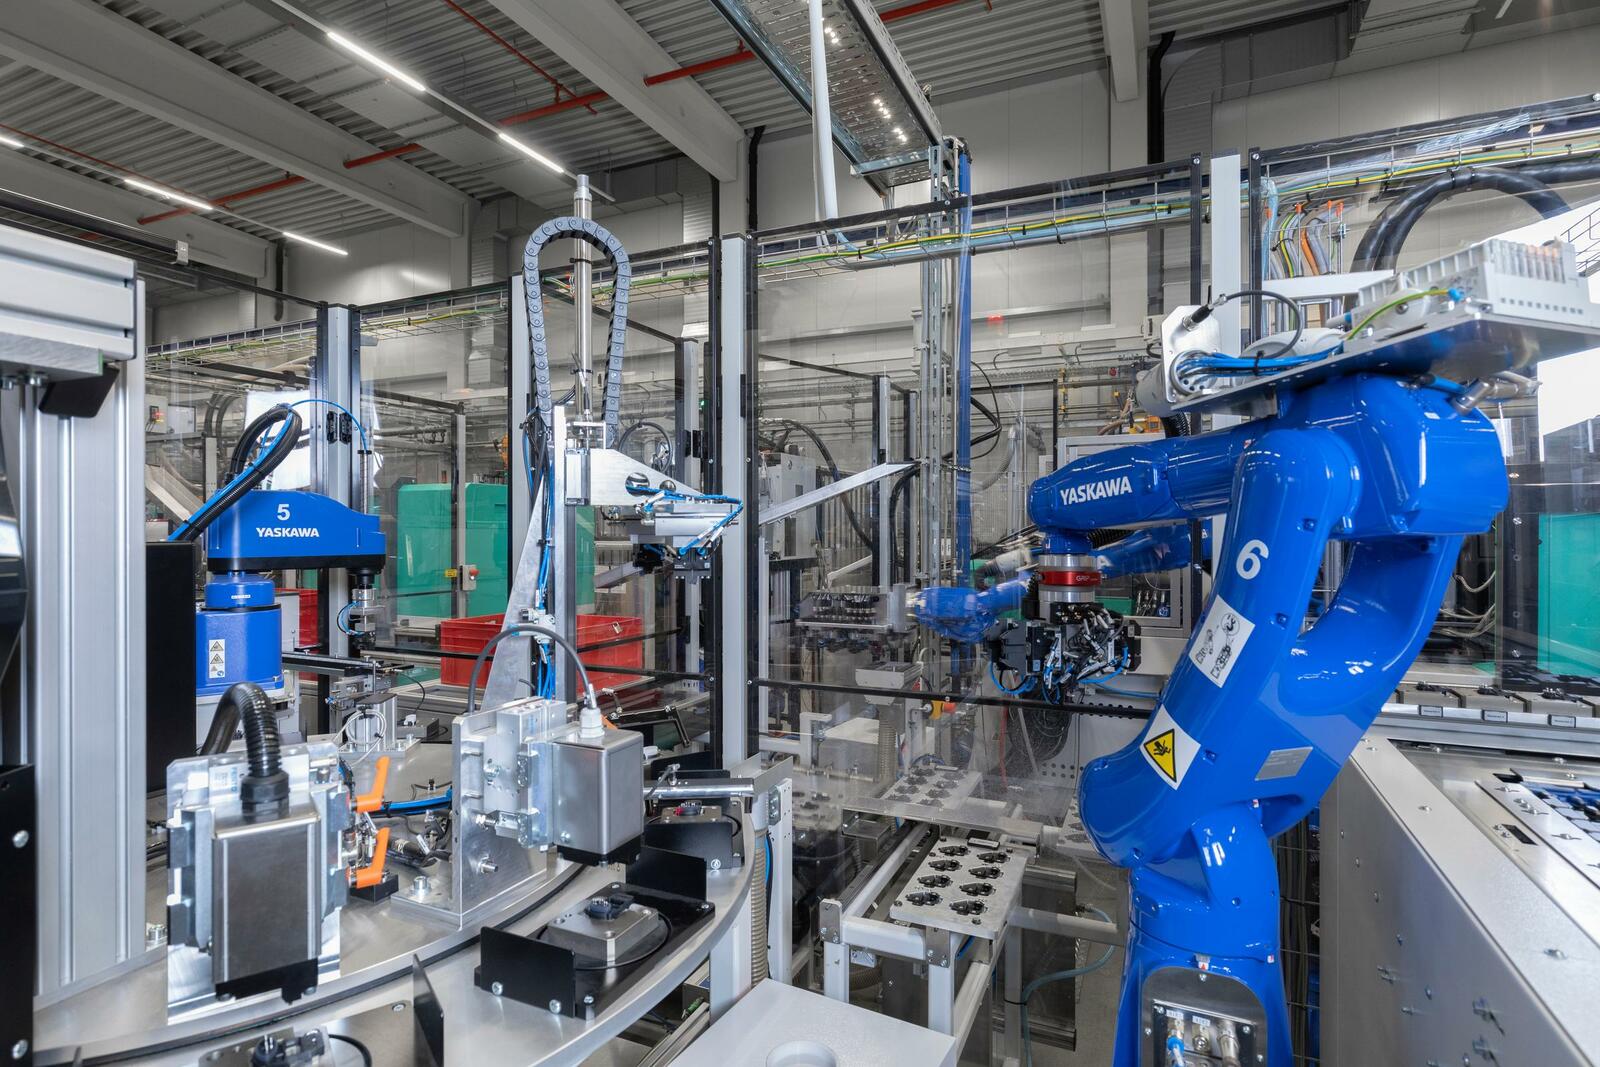 Die komplette Anlage ist mit Robotern des Herstellers Yaskawa ausgerüstet, was die Steuerung vereinfachte.